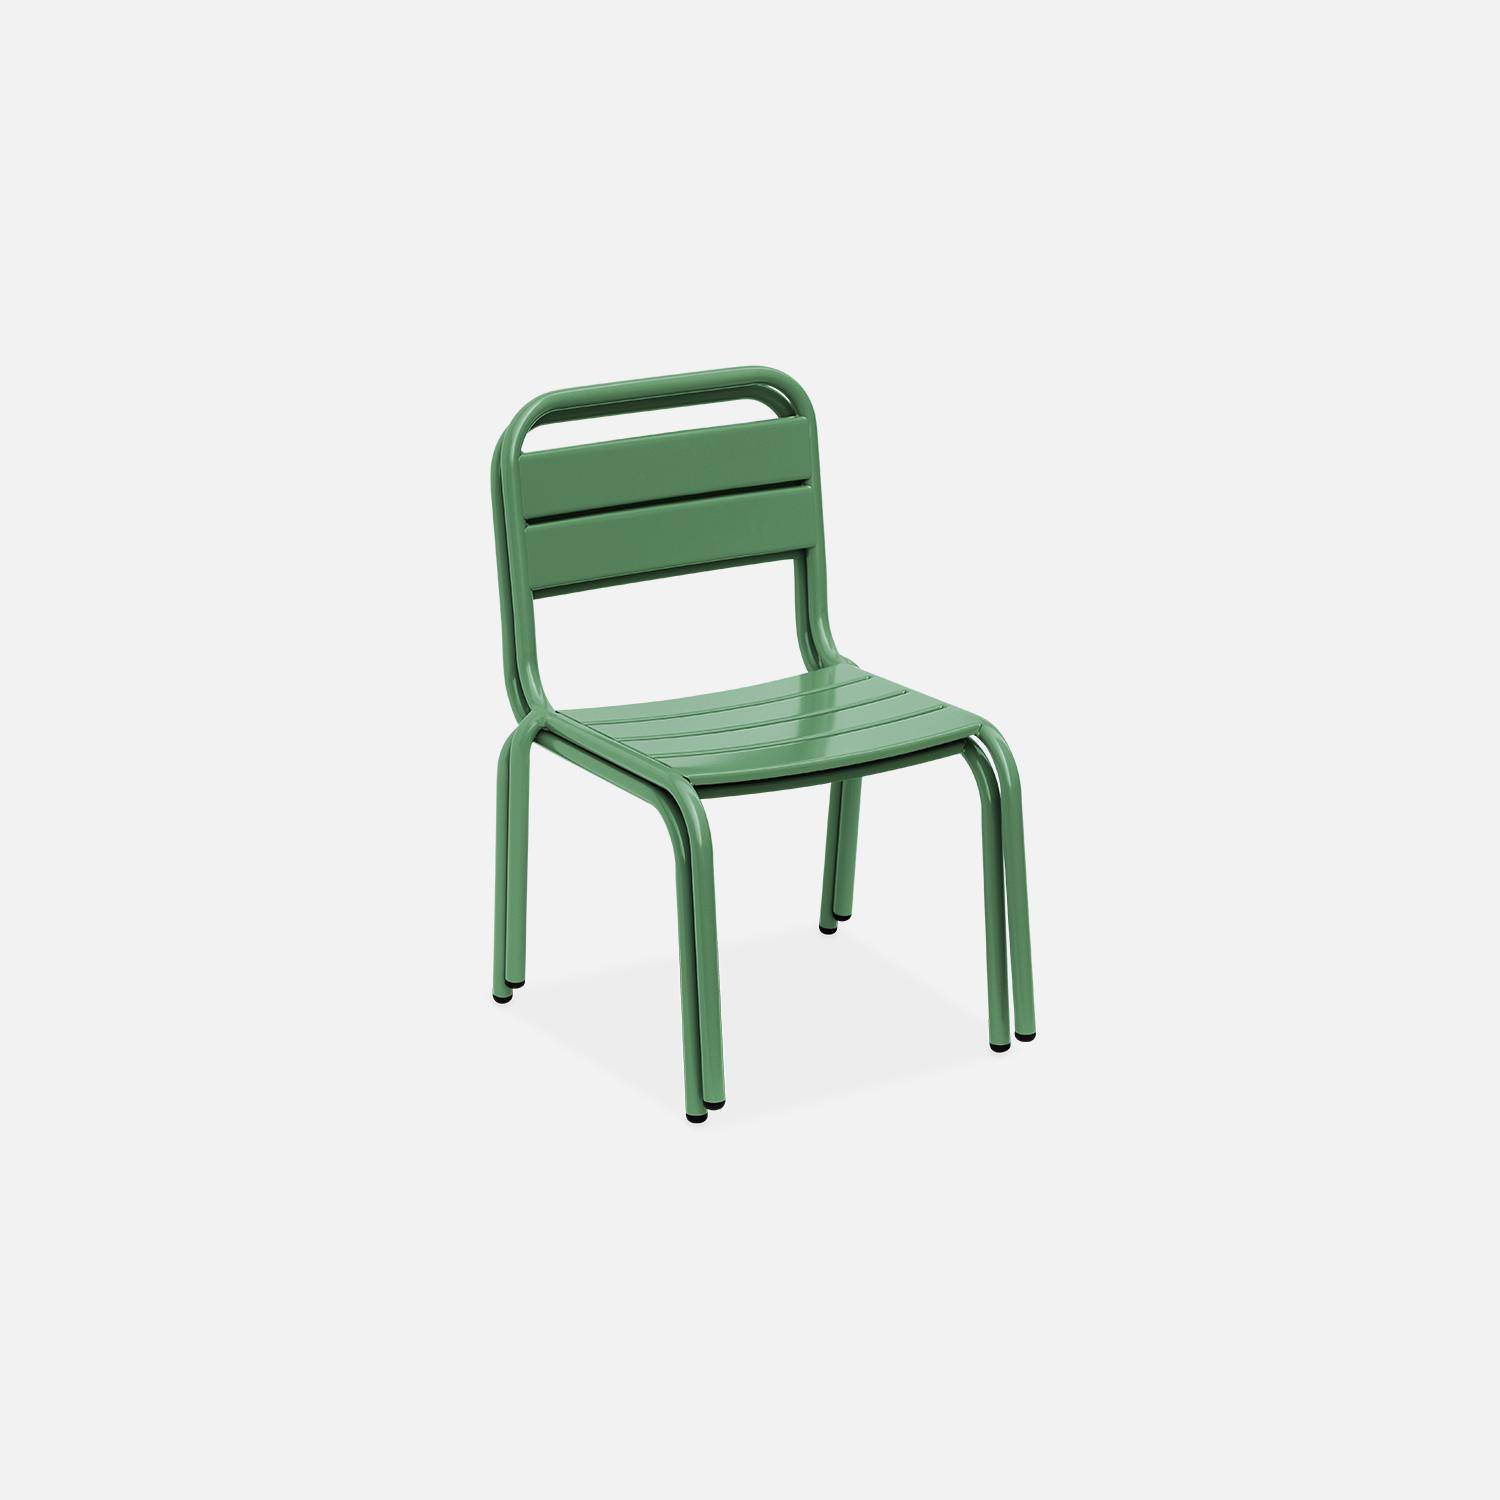 Tisch 48x48cm und 2 Stühle für Kinder, graugrün, 48x48cm, für draußen verwendbar - Anna Photo6